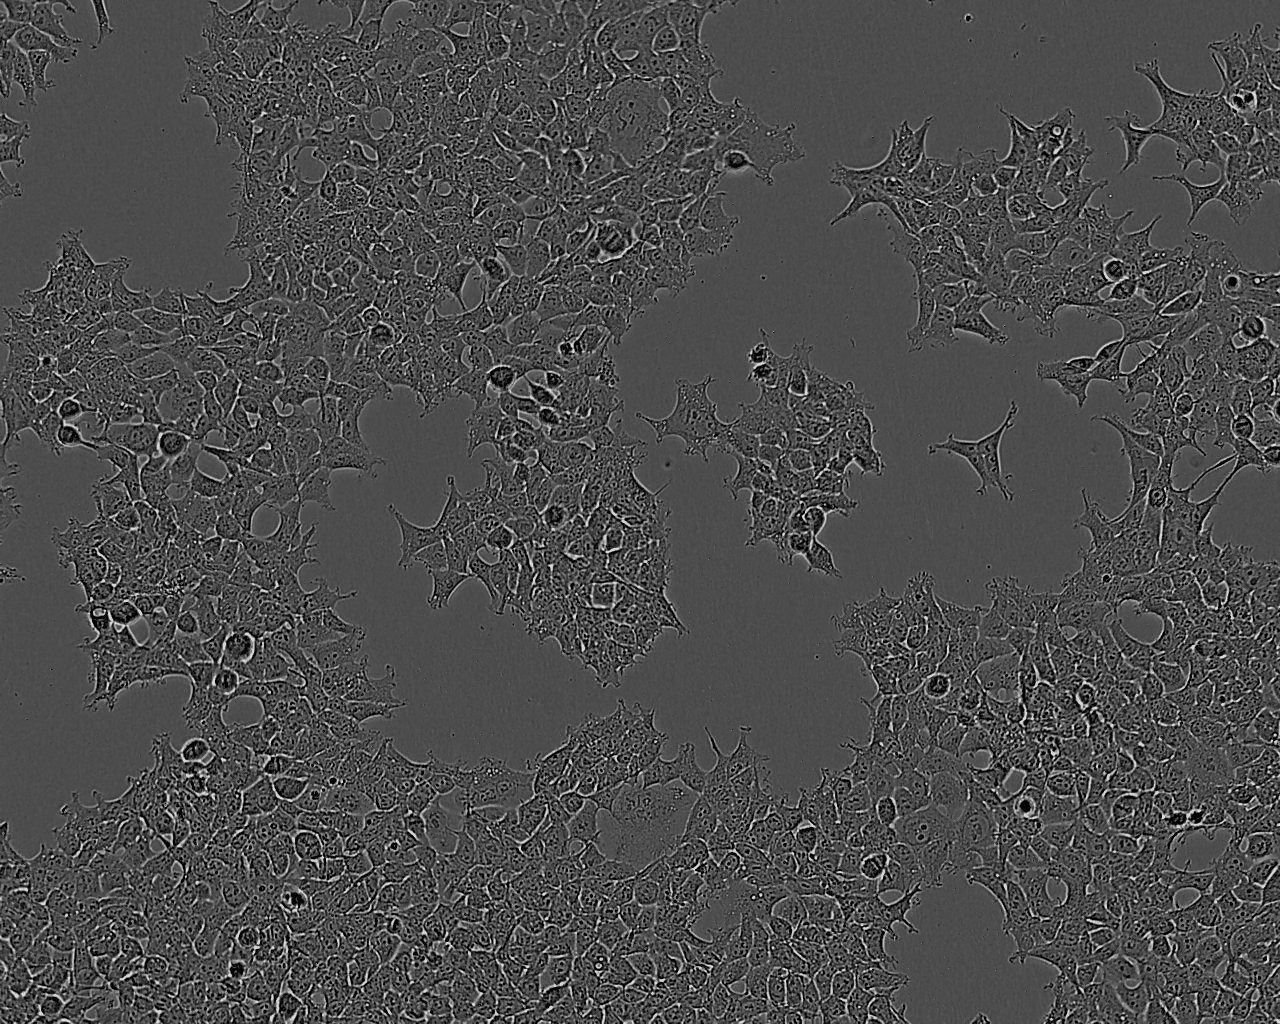 Malme-3M Cells(赠送Str鉴定报告)|人恶性黑色素瘤细胞